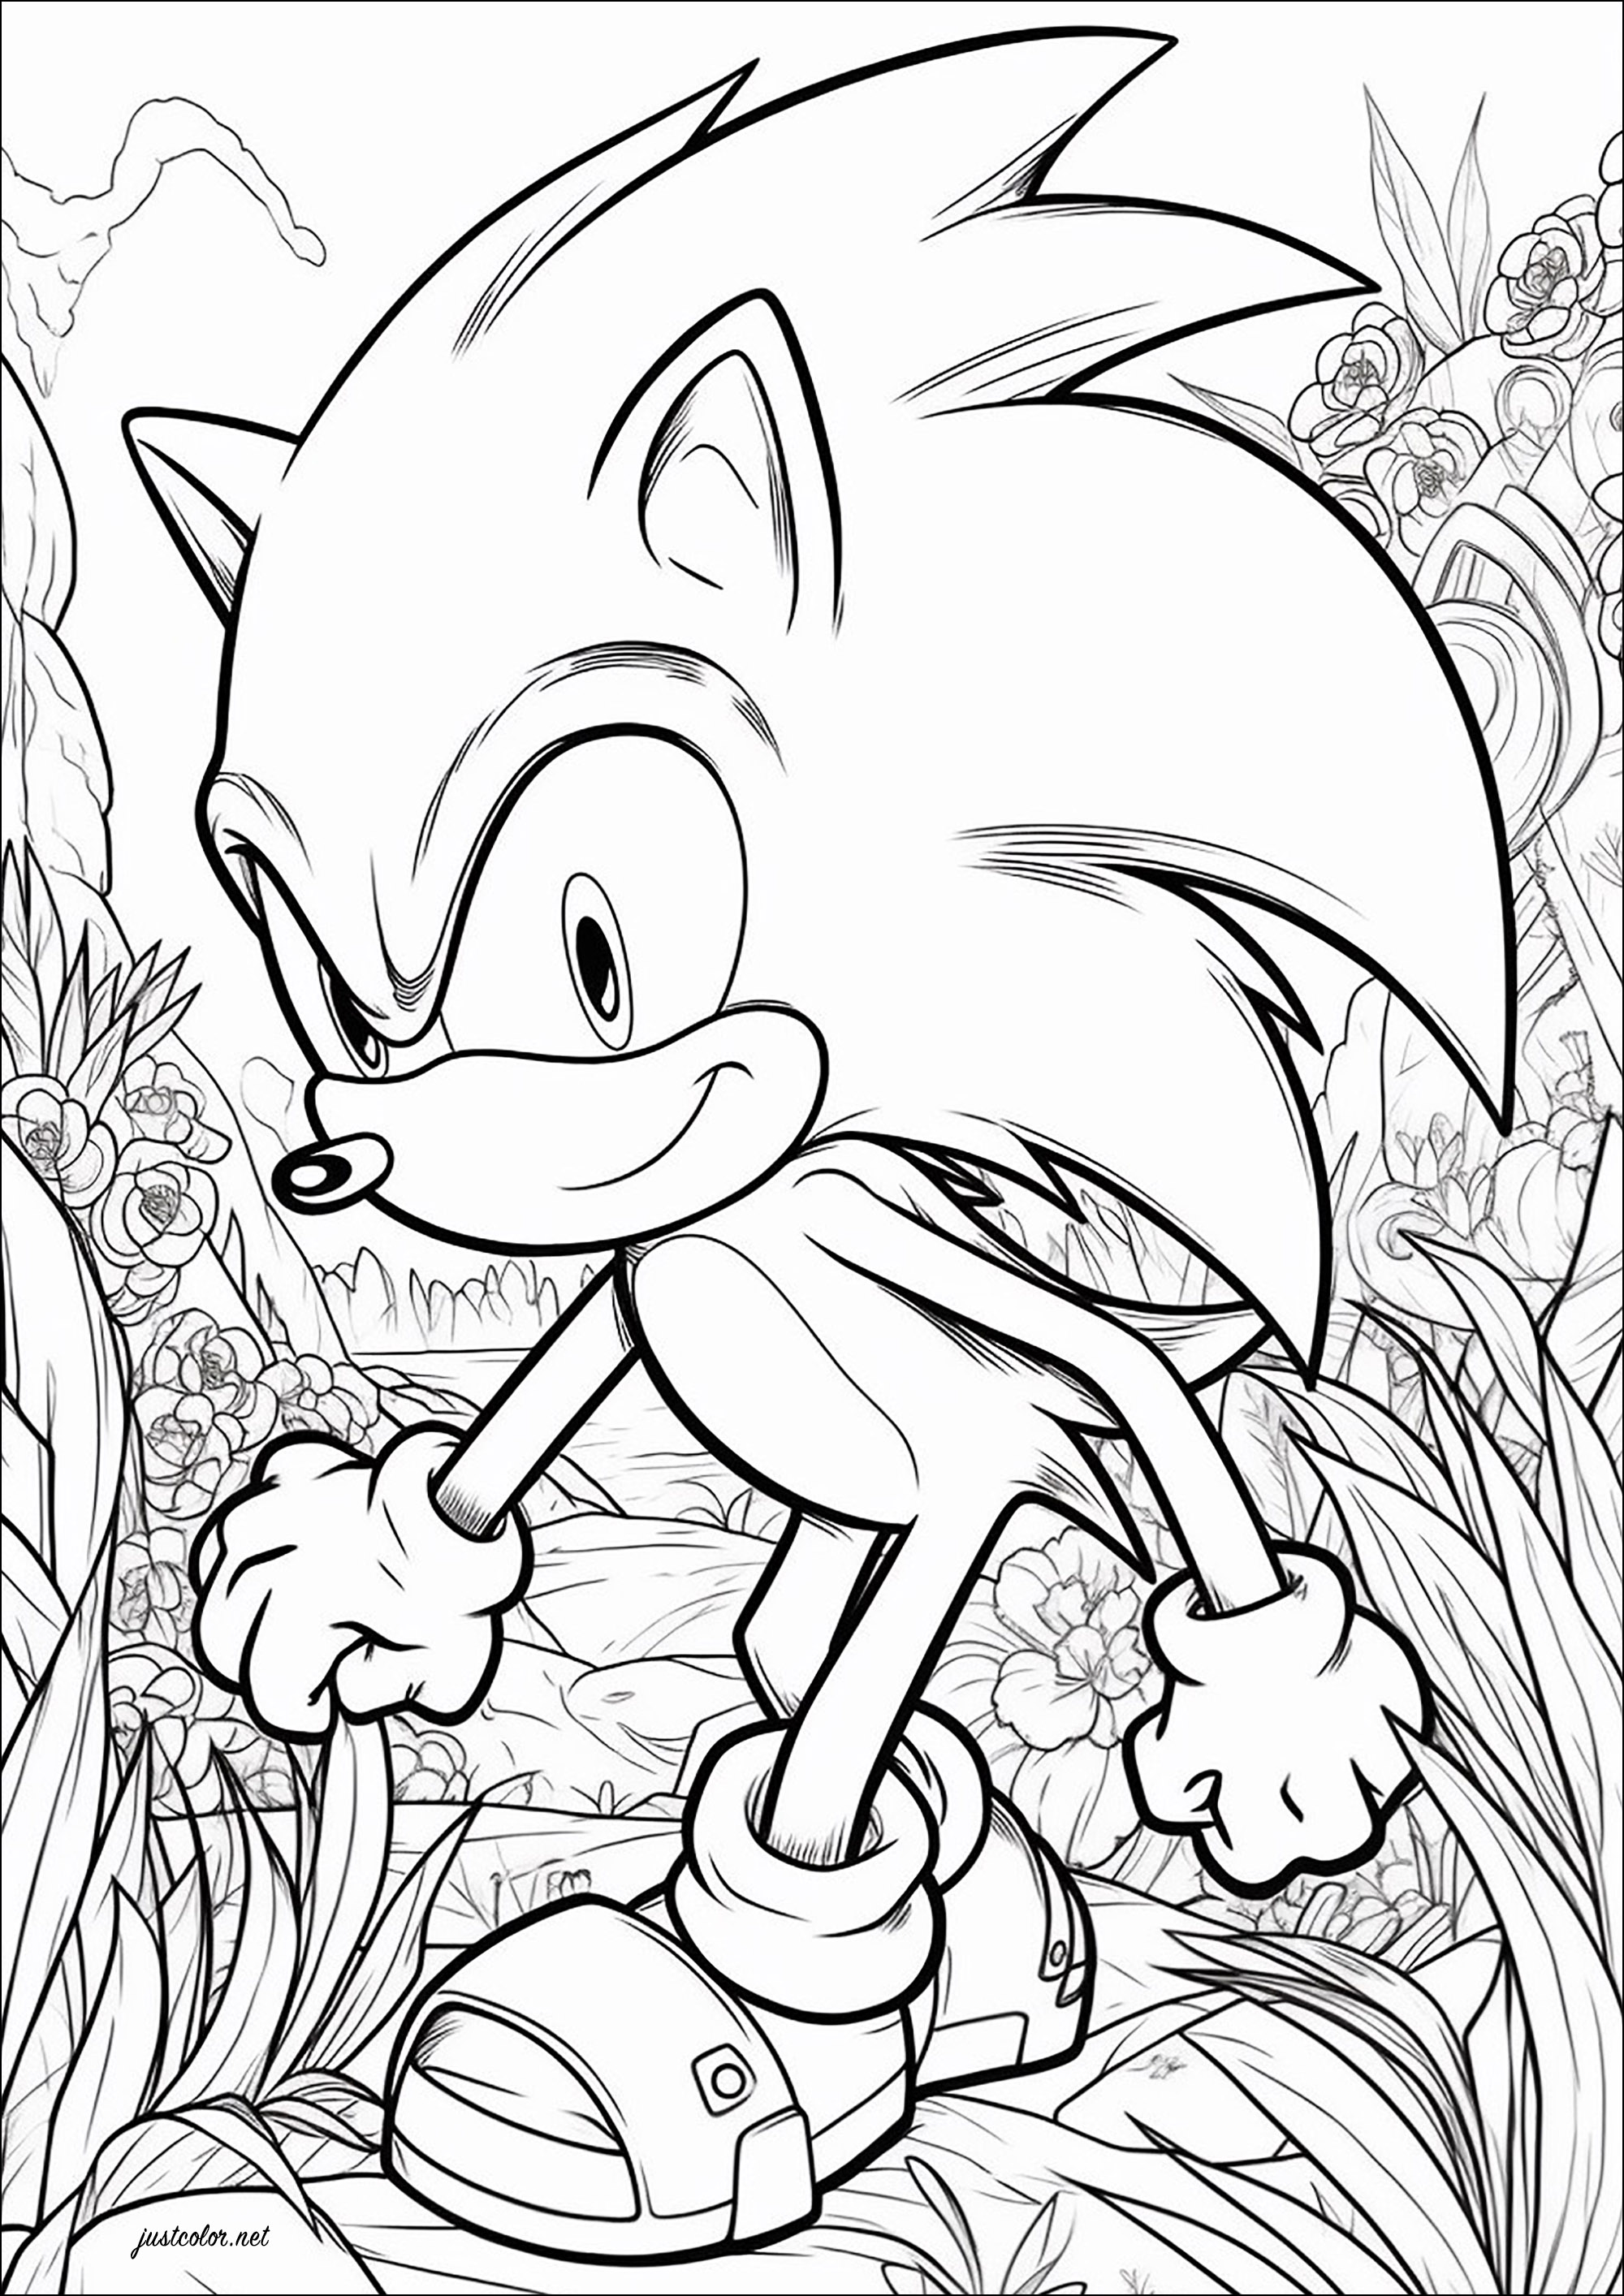 Sonic der Igel und ein hübscher blumiger Hintergrund. Sonic the Hedgehog ist eine Videospielserie, die seit 1991 von der japanischen Firma Sega entwickelt wird. Das Maskottchen des Unternehmens, Sonic, ein anthropomorpher blauer Igel, kämpft gegen den Hauptgegner der Serie, Dr. Eggman.